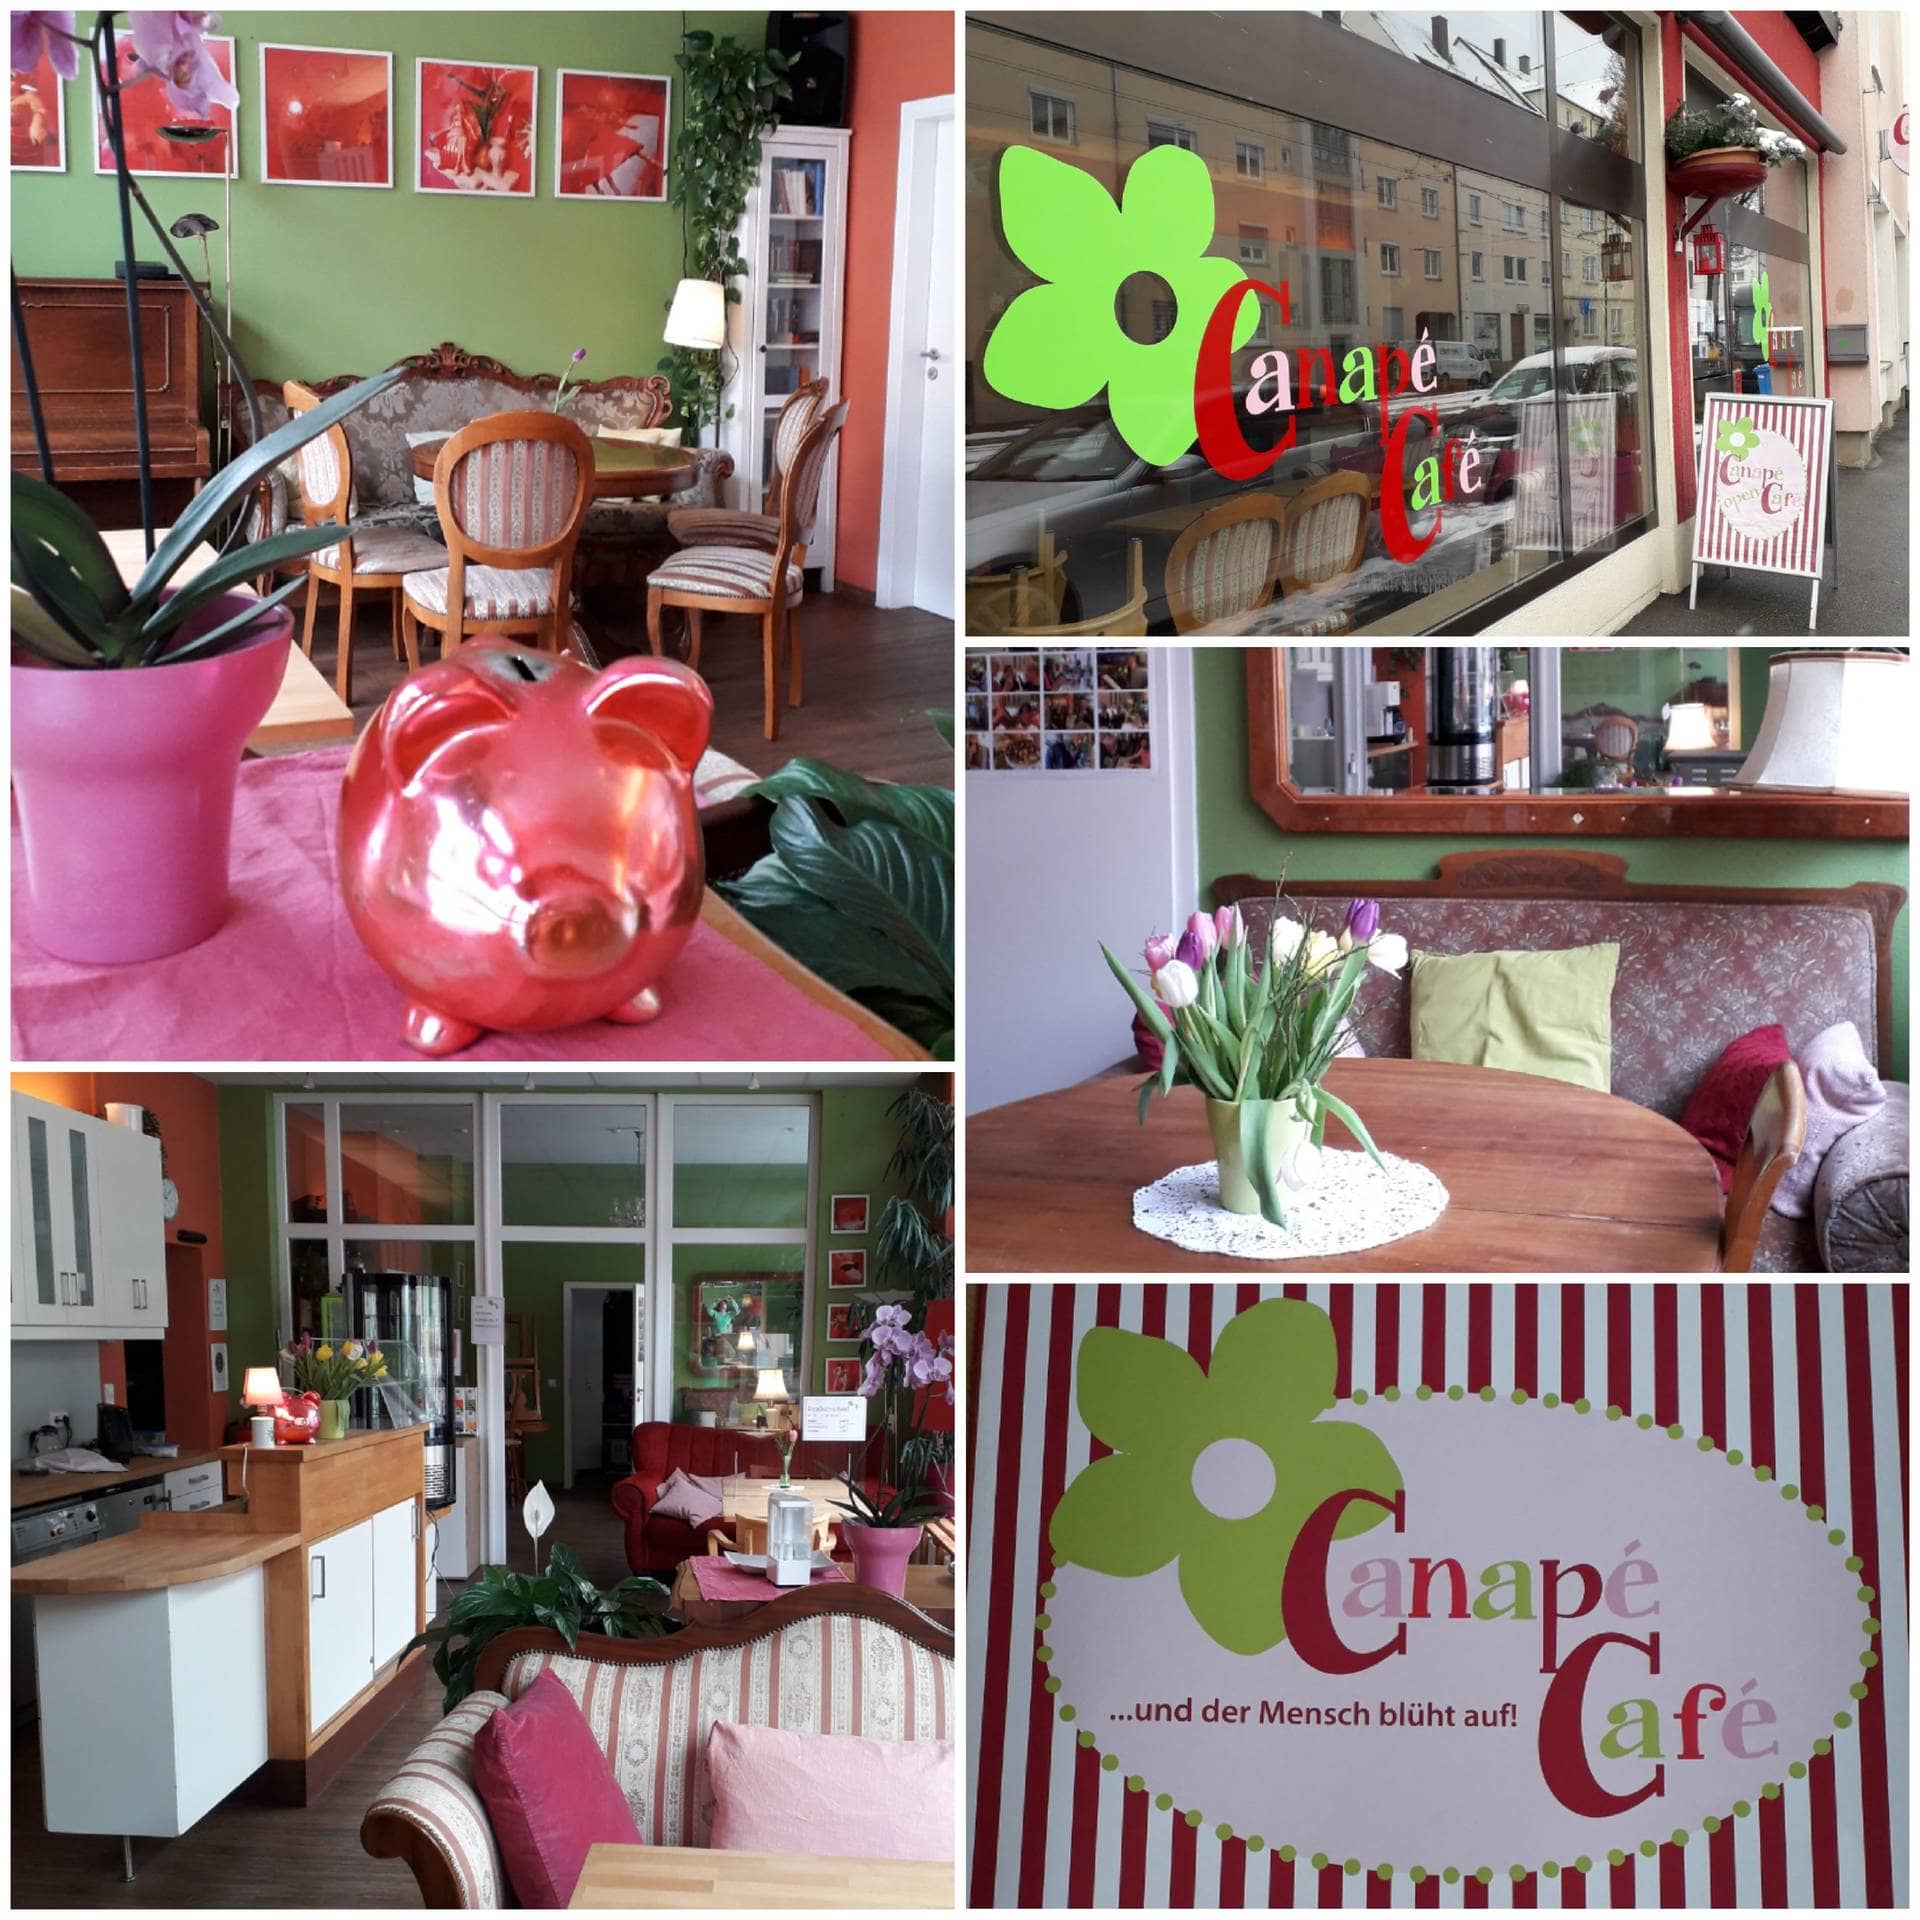 Canapé Café in Ulm